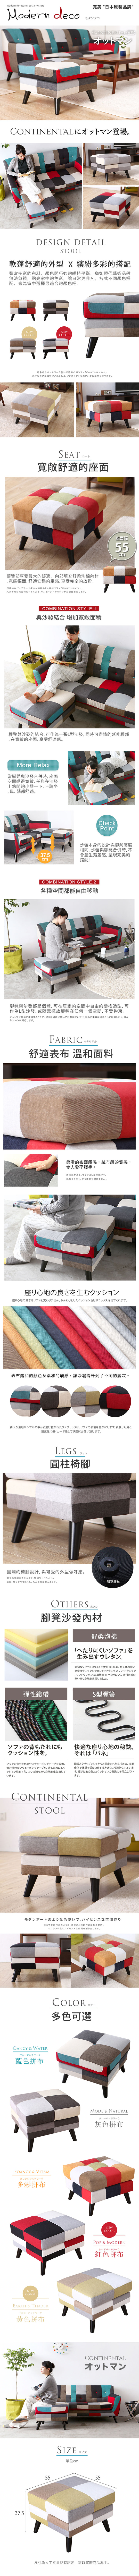 【日本品牌MODERN DECO】康提南斯繽紛拼布腳凳/5色/H&D東稻家居